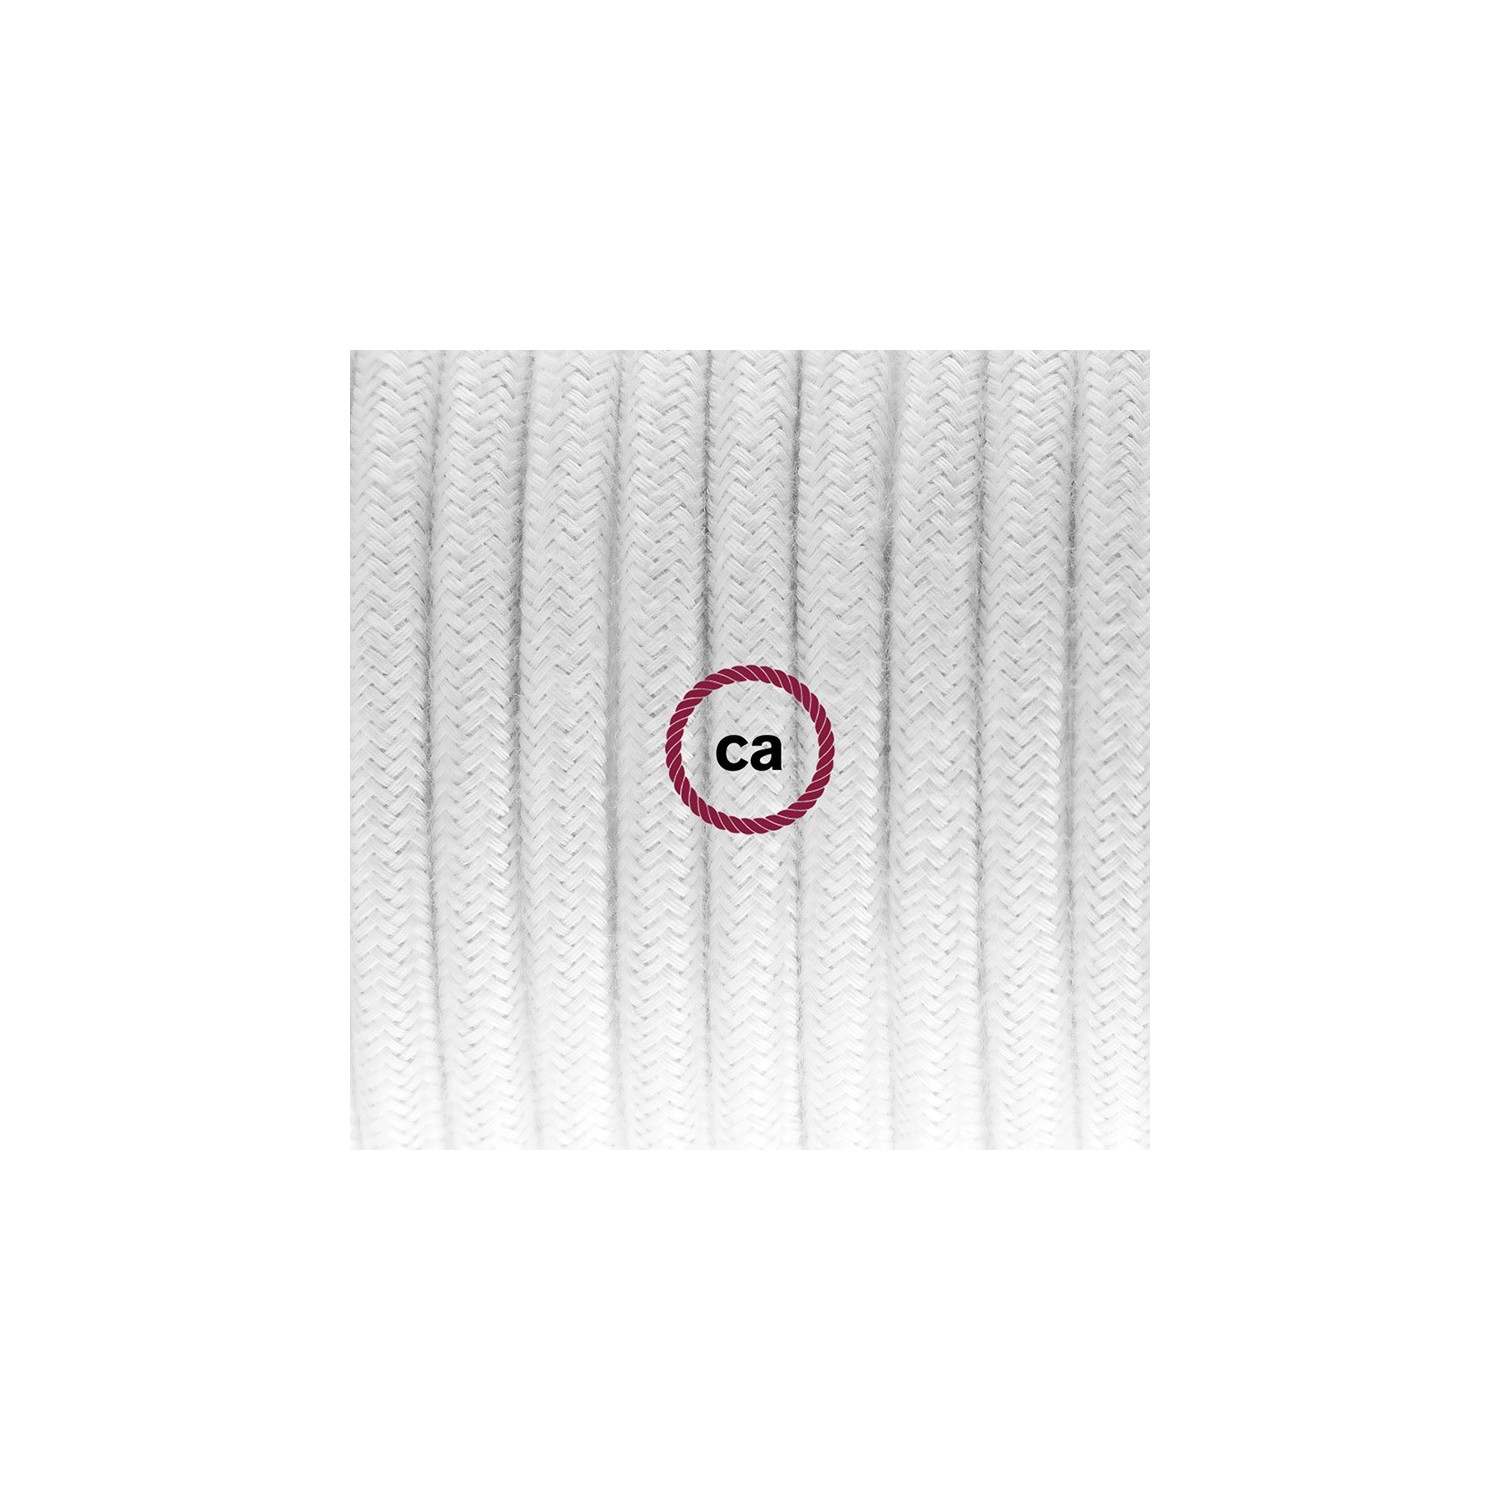 Zuleitung für Tischleuchten RC01 Weiß Baumwolle 1,80 m. Wählen Sie aus drei Farben bei Schalter und Stecke.